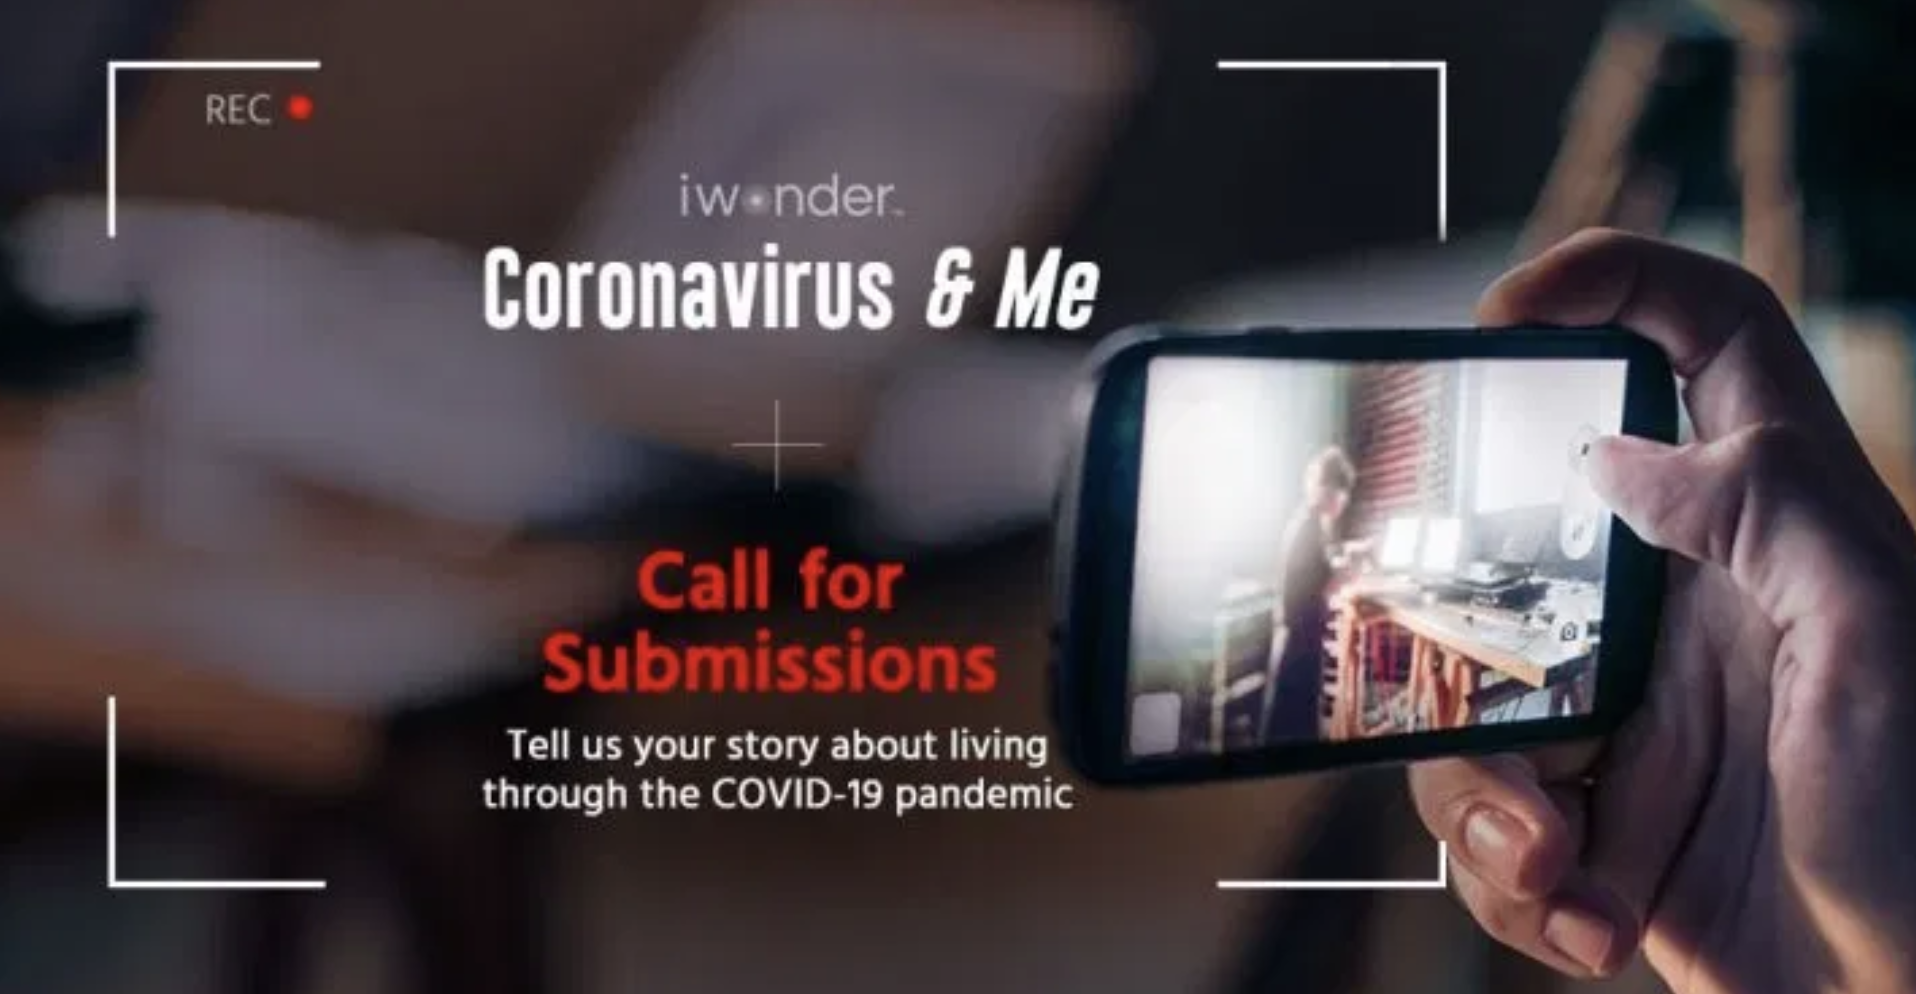 Be part of iwonder’s first original series “Coronavirus & Me”